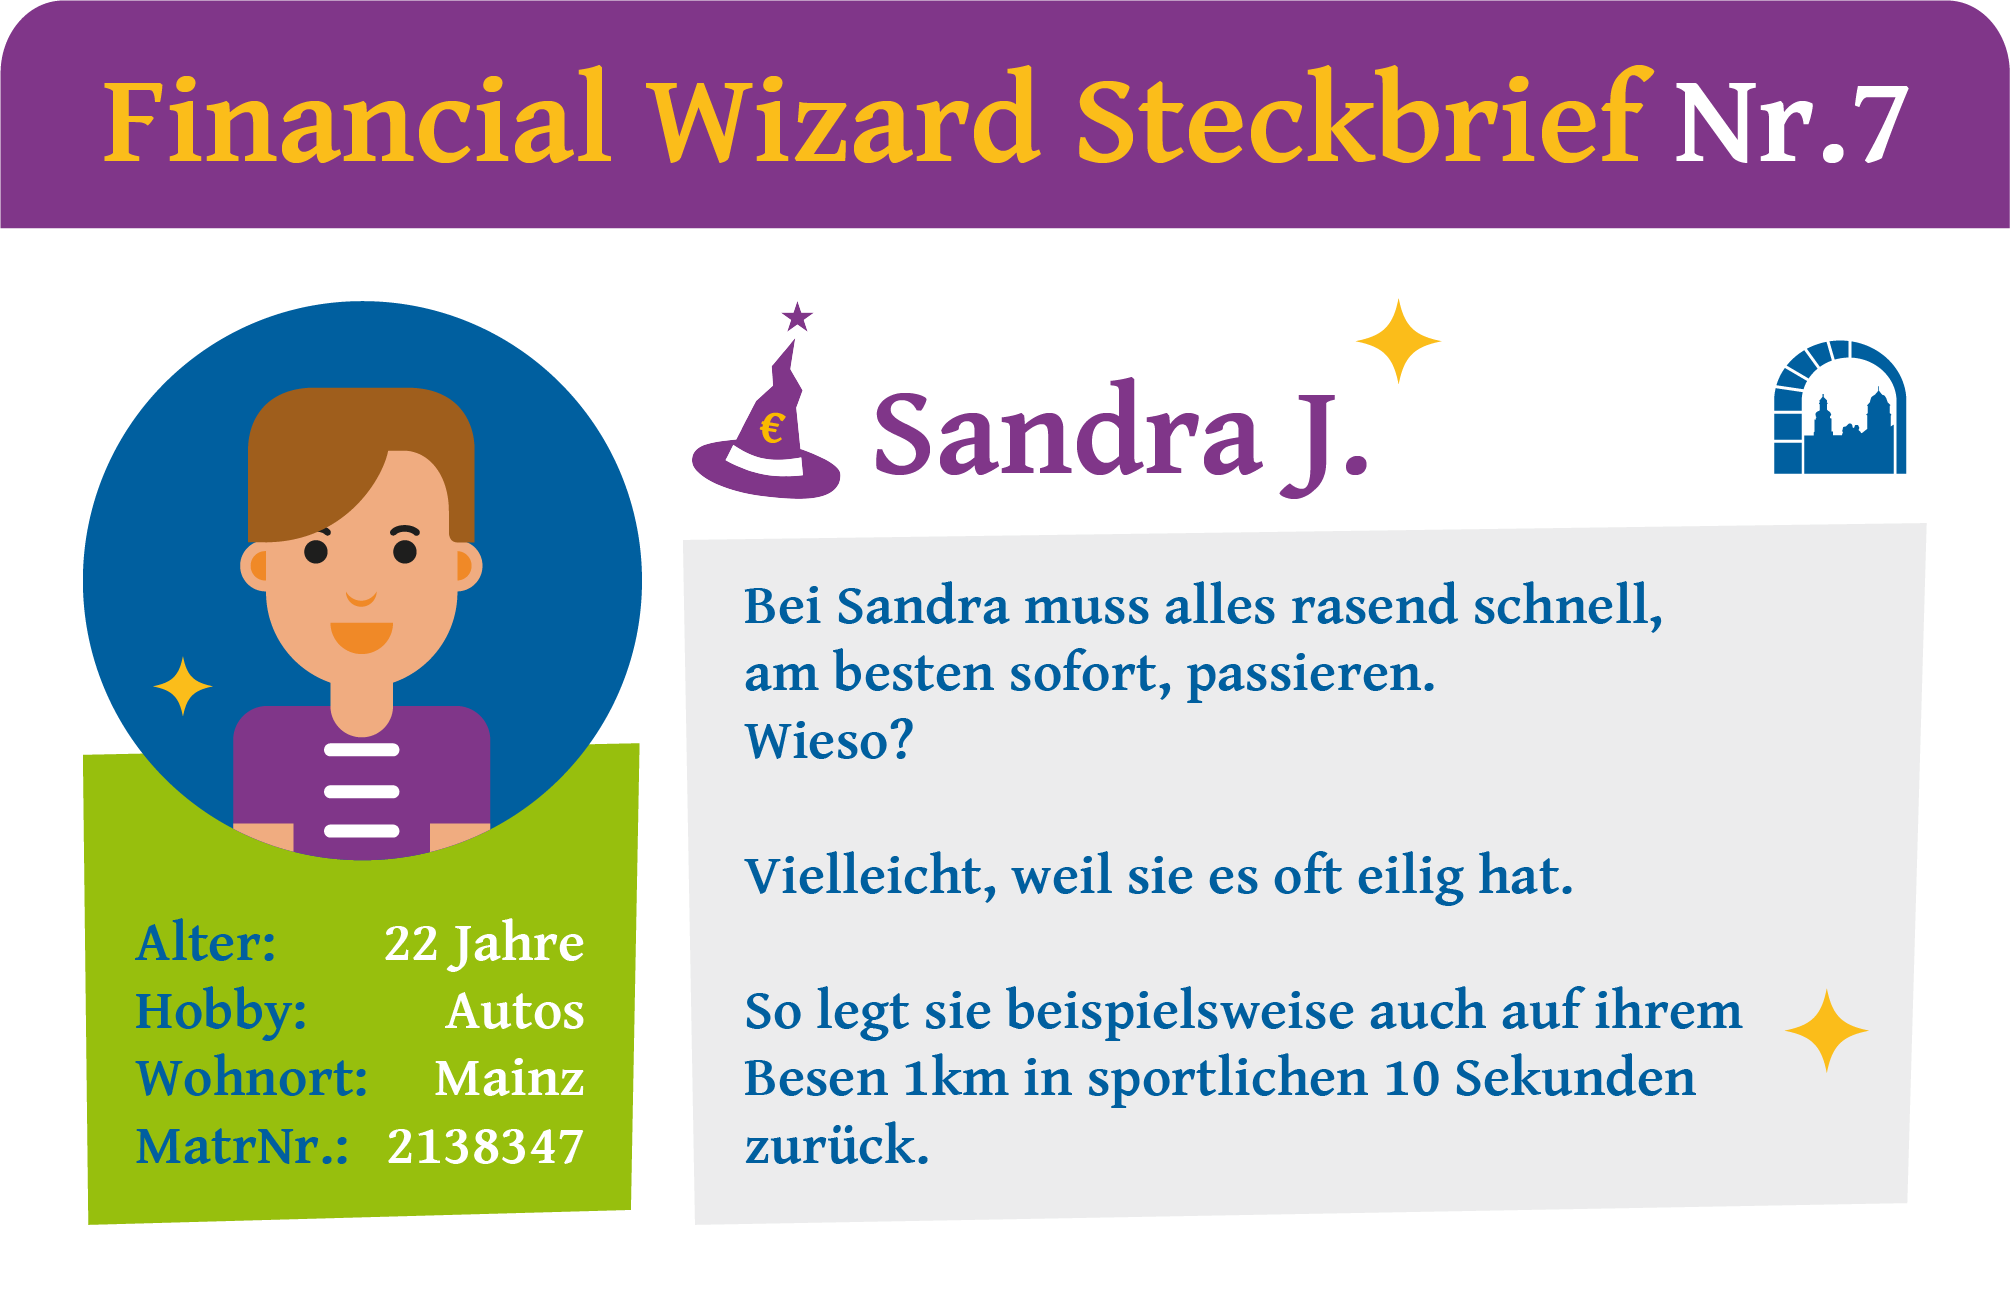 Steckbrief Nr. 7 zur Financial Wizard Challenge 4